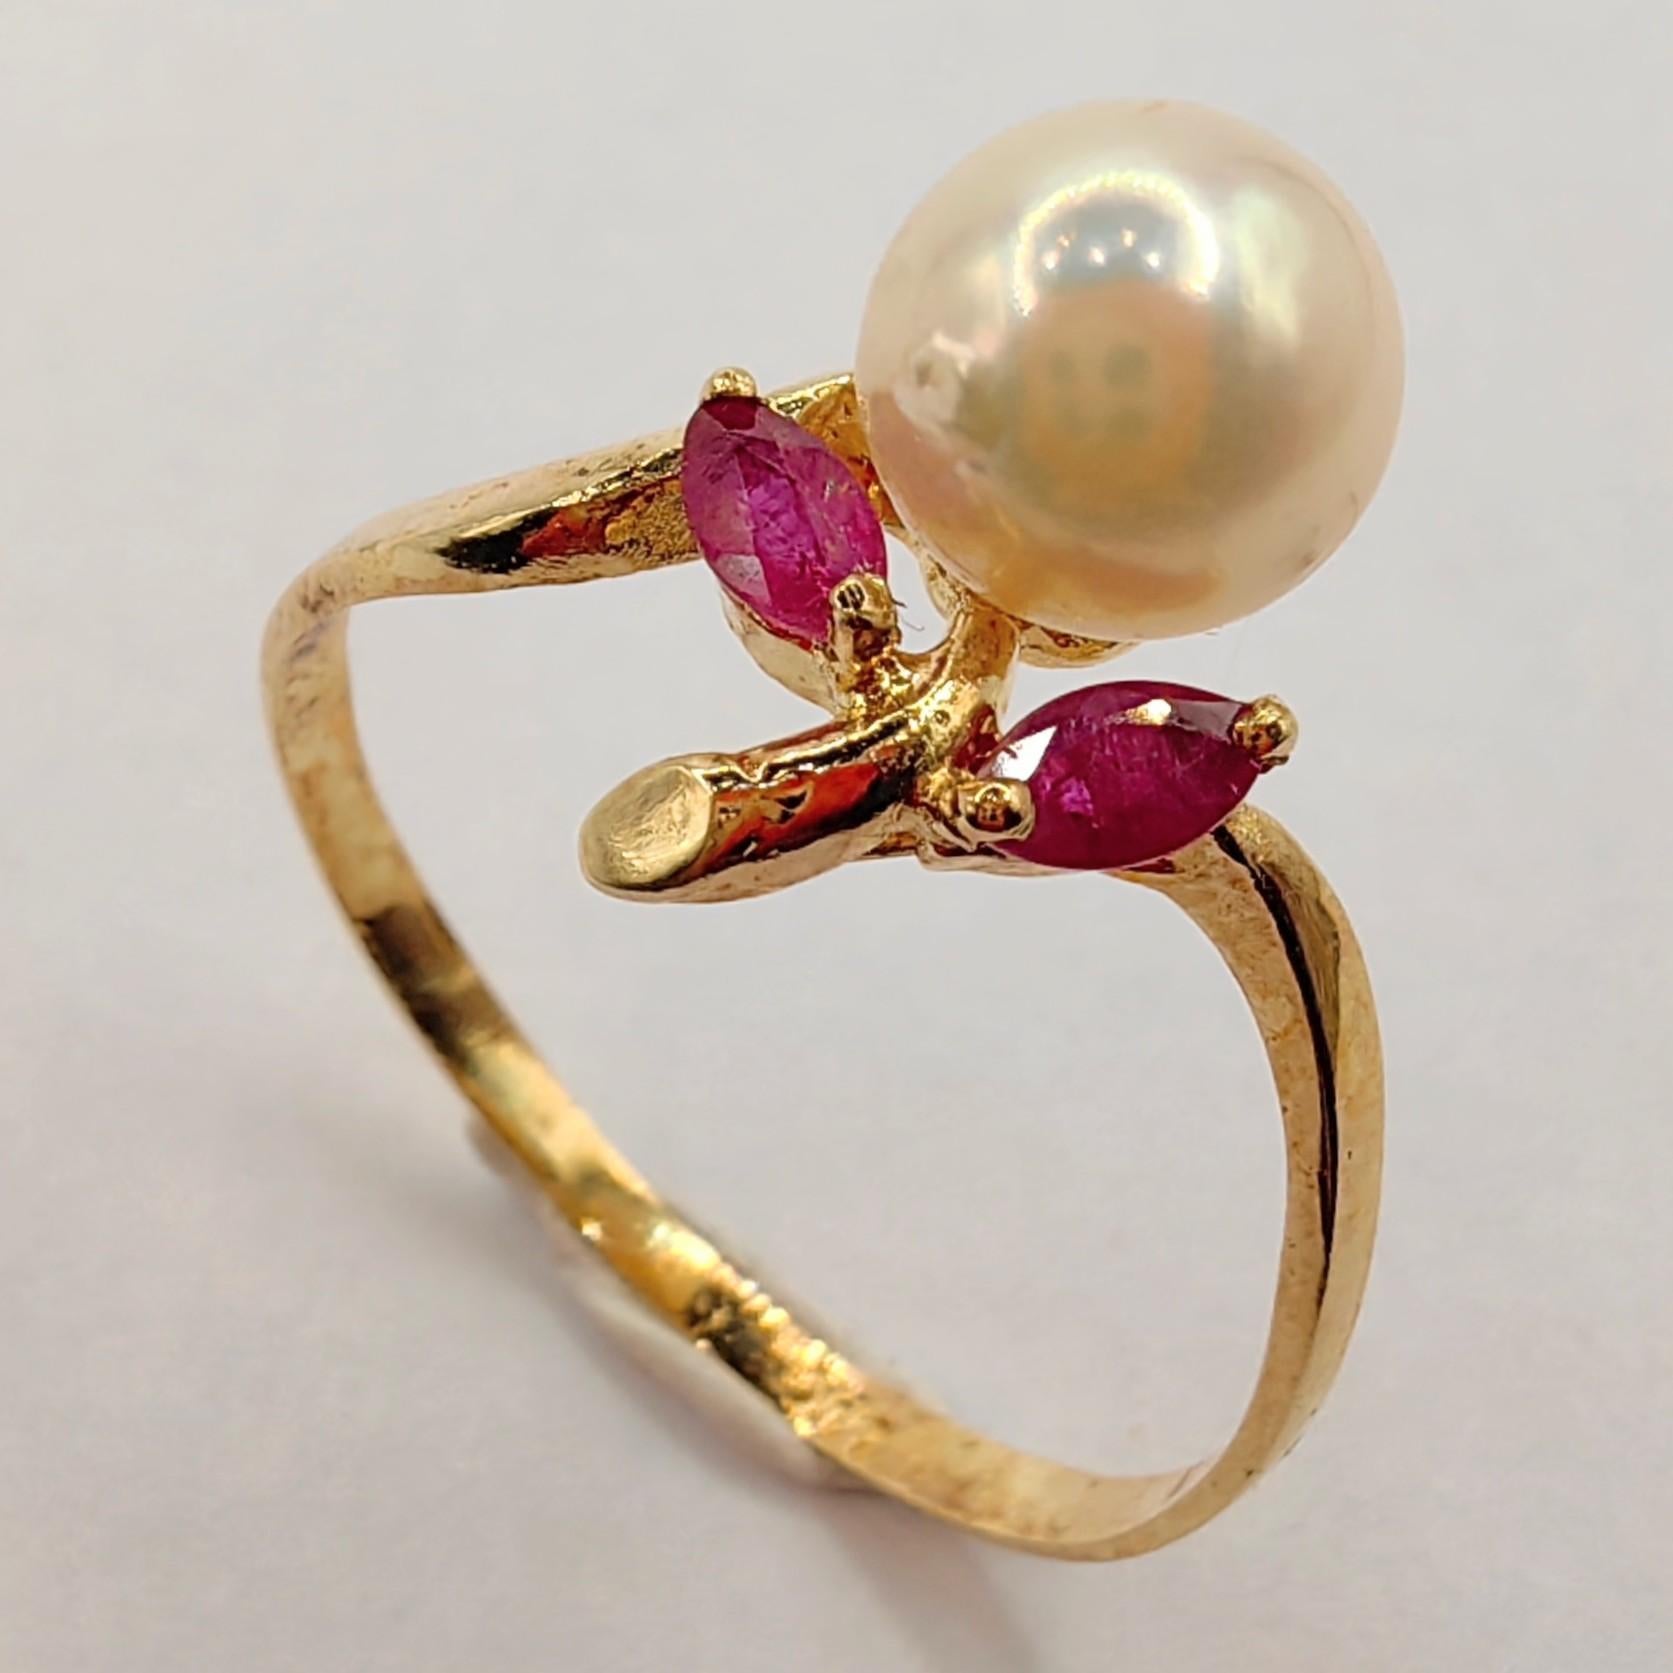 Voici notre bague Vintage en or jaune 14 carats, rubis et perles, une pièce intemporelle qui allie charme classique et élégance gracieuse.

Au cœur de cette bague exquise se trouve une perle ronde de culture d'eau douce lustrée, mesurant 6,38 mm.